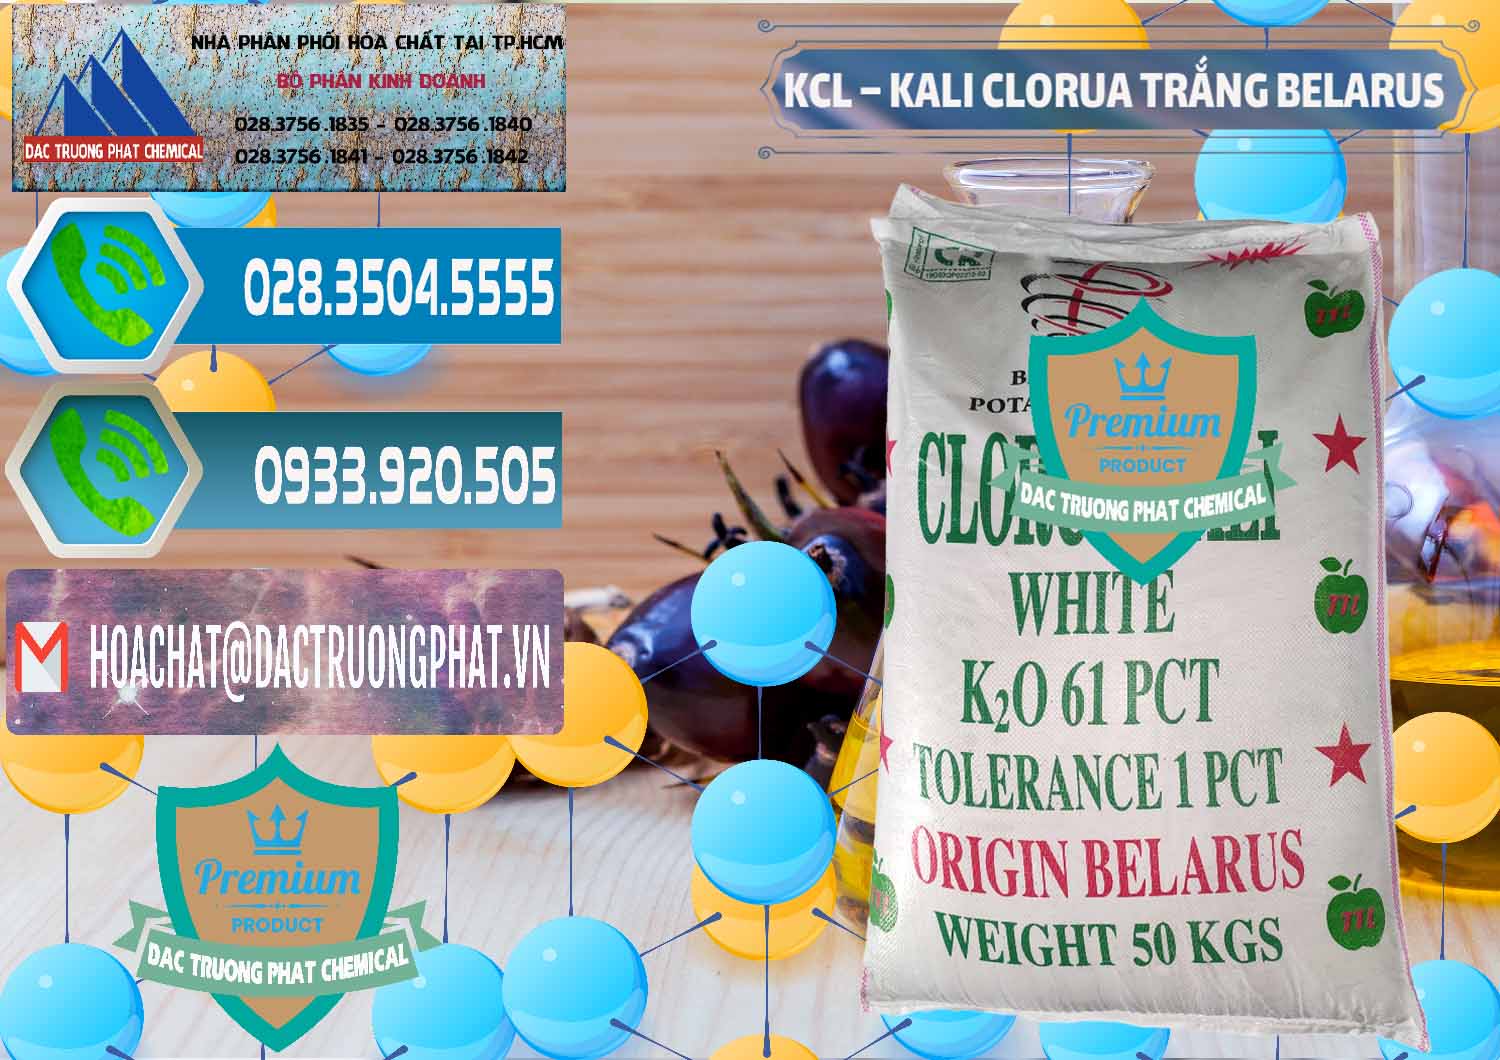 Chuyên bán _ cung cấp KCL – Kali Clorua Trắng Belarus - 0085 - Đơn vị cung cấp ( phân phối ) hóa chất tại TP.HCM - congtyhoachat.net